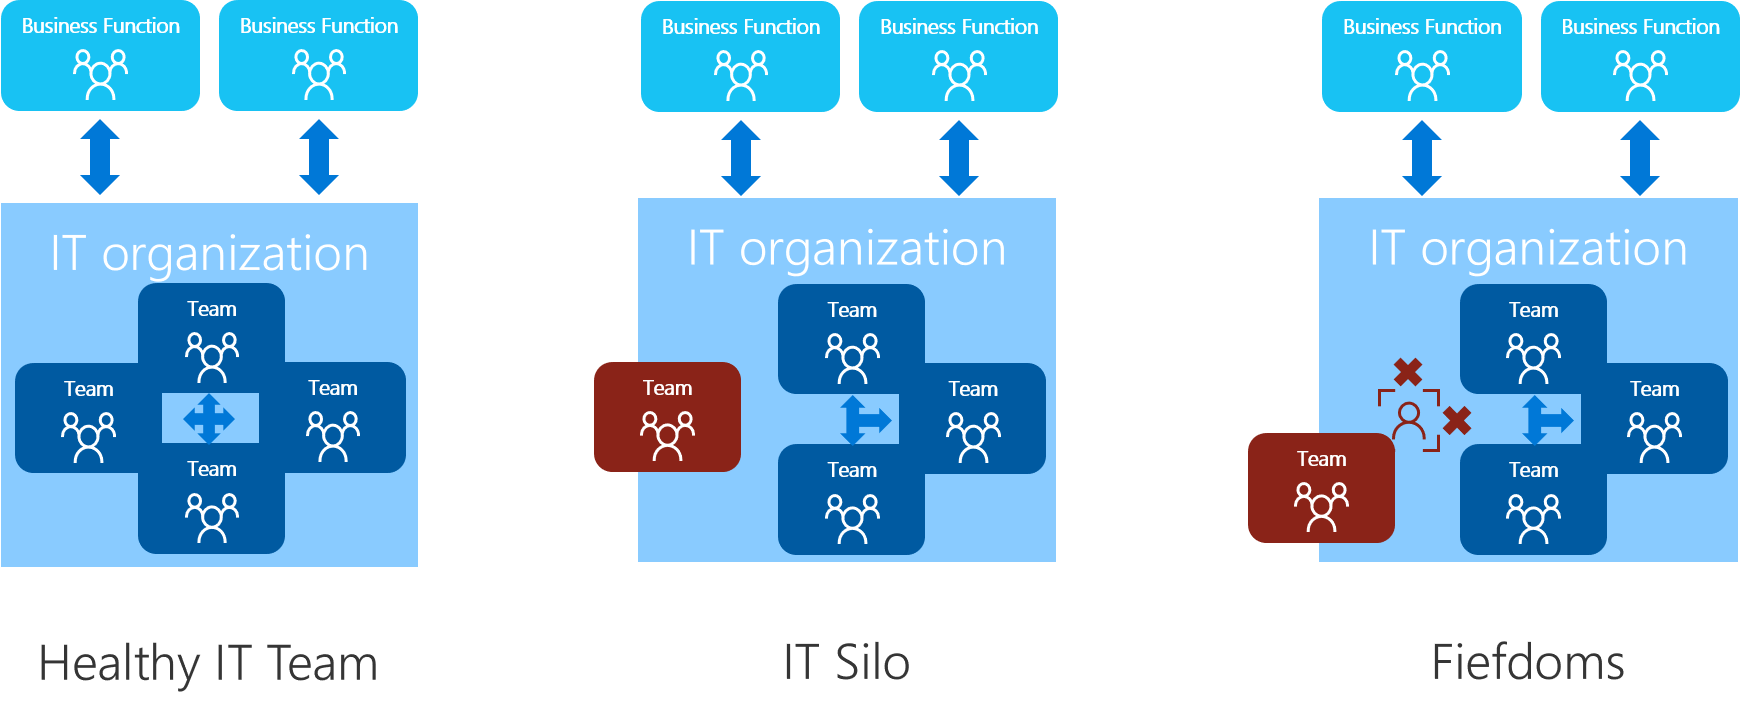 Diagrama que mostra uma comparação entre equipas em bom estado de funcionamento e anti-padrões organizacionais.